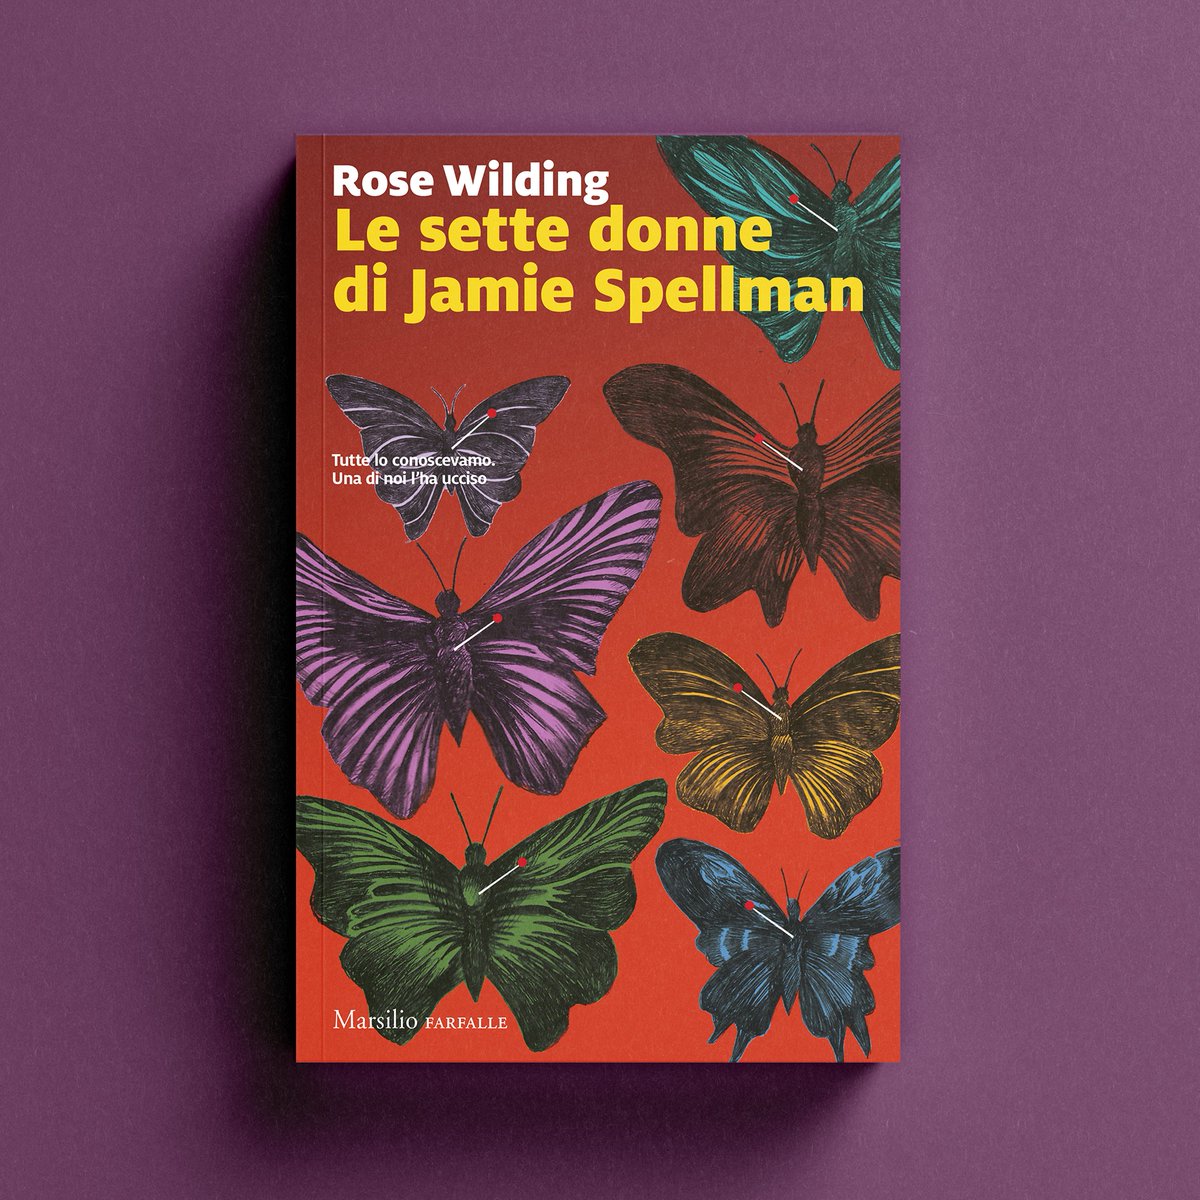 Da oggi “Le sette donne di Jamie Spellman” è in libreria 🦋

Scopri il romanzo d’esordio di Rose Wilding 👇

🔗 bit.ly/Lesettedonnedi…

#Marsilio #farfalle #RoseWilding #lesettedonnediJamieSpellman #speakofthedevil @flaviavadrucci